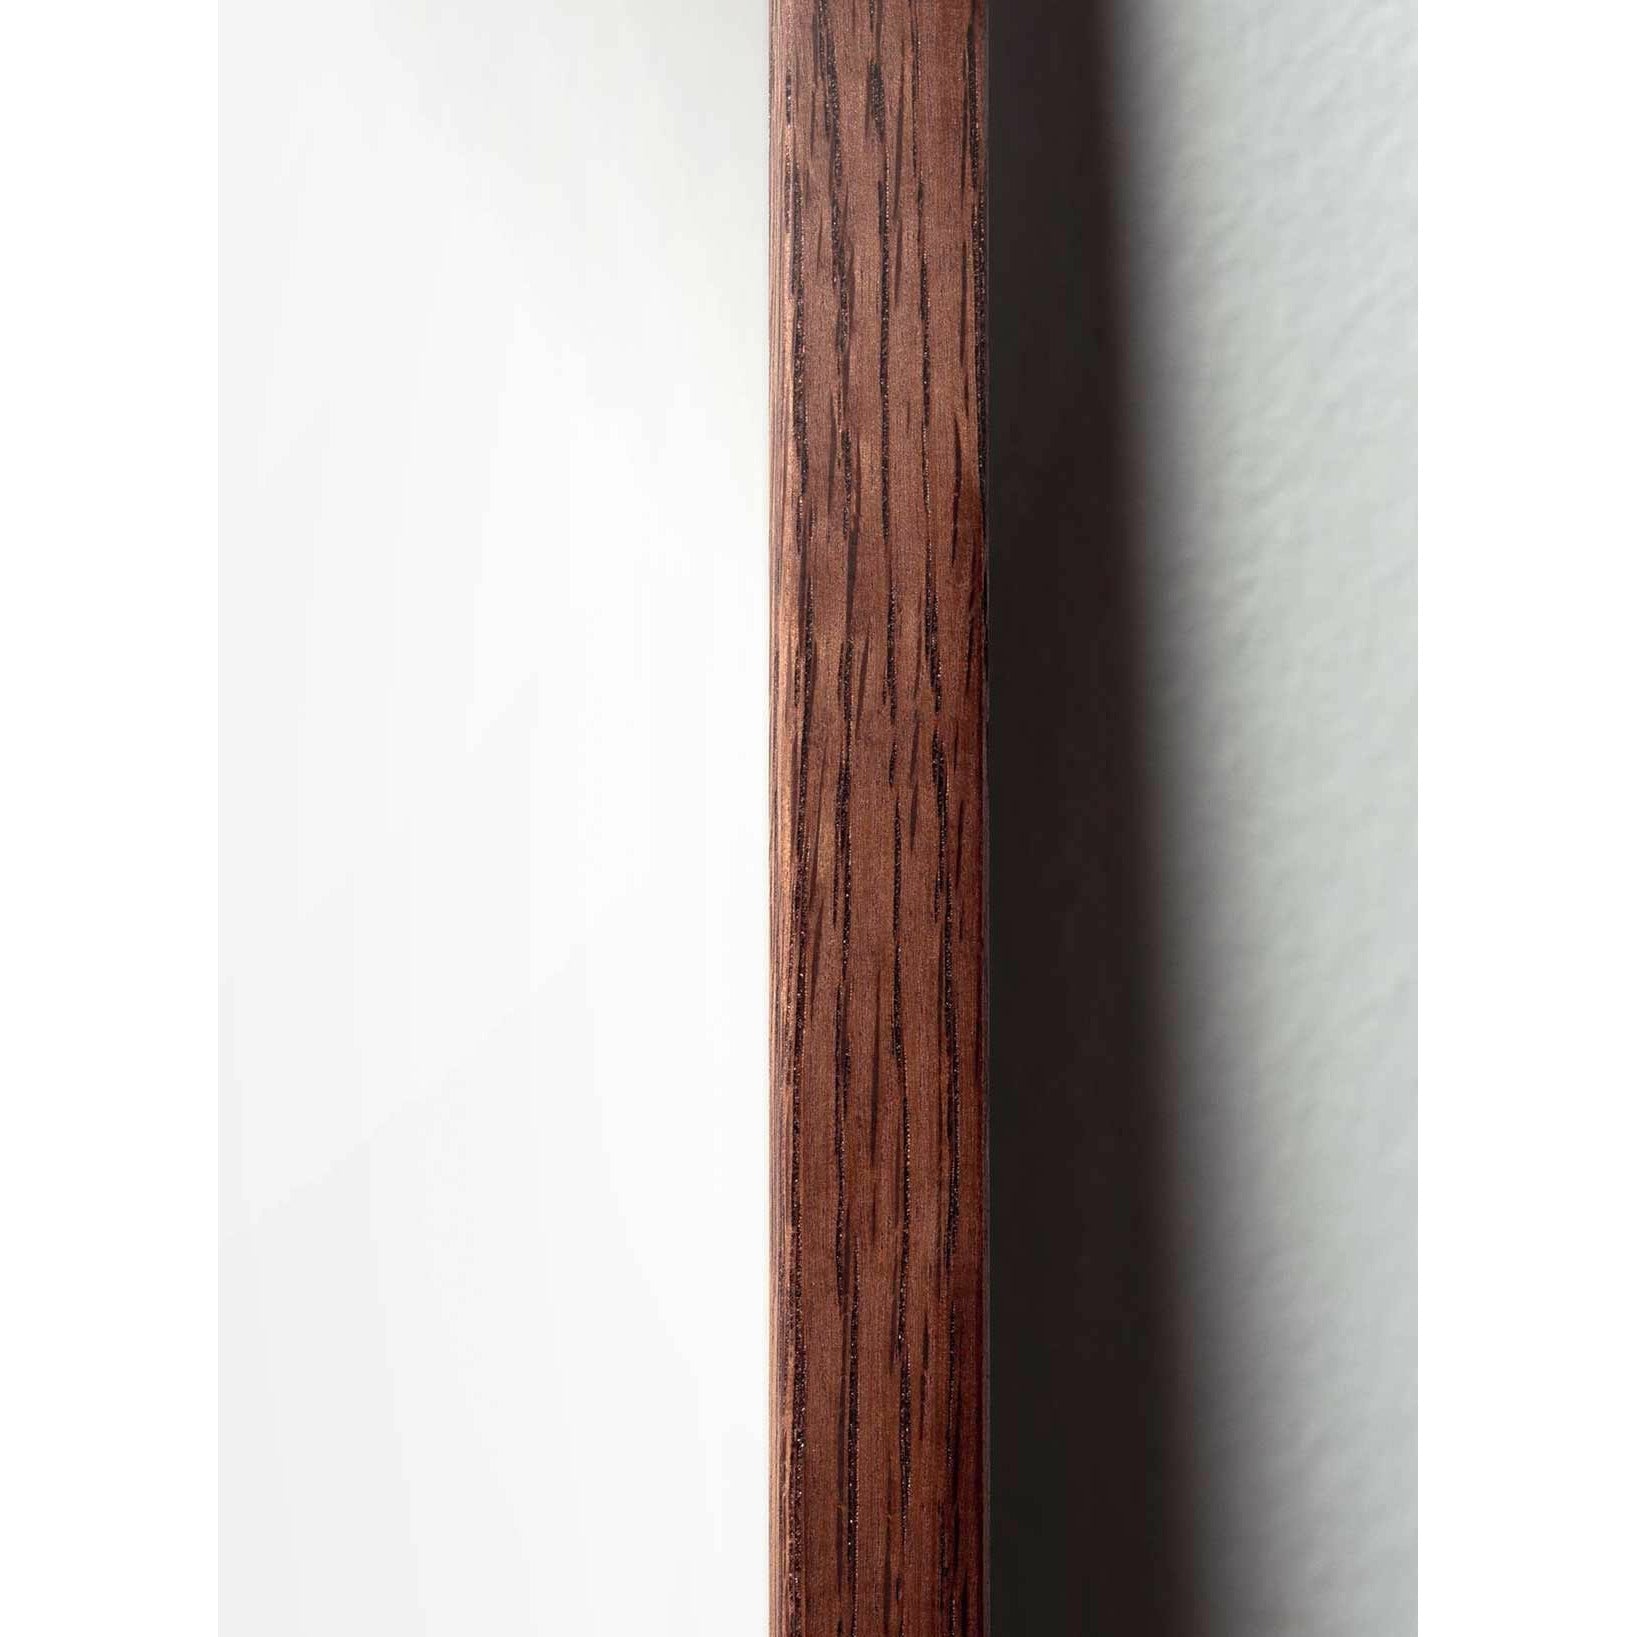 Brainchild Munapaperin pidike juliste, kehys, joka on valmistettu tummasta puusta 50x70 cm, vaaleanpunainen tausta